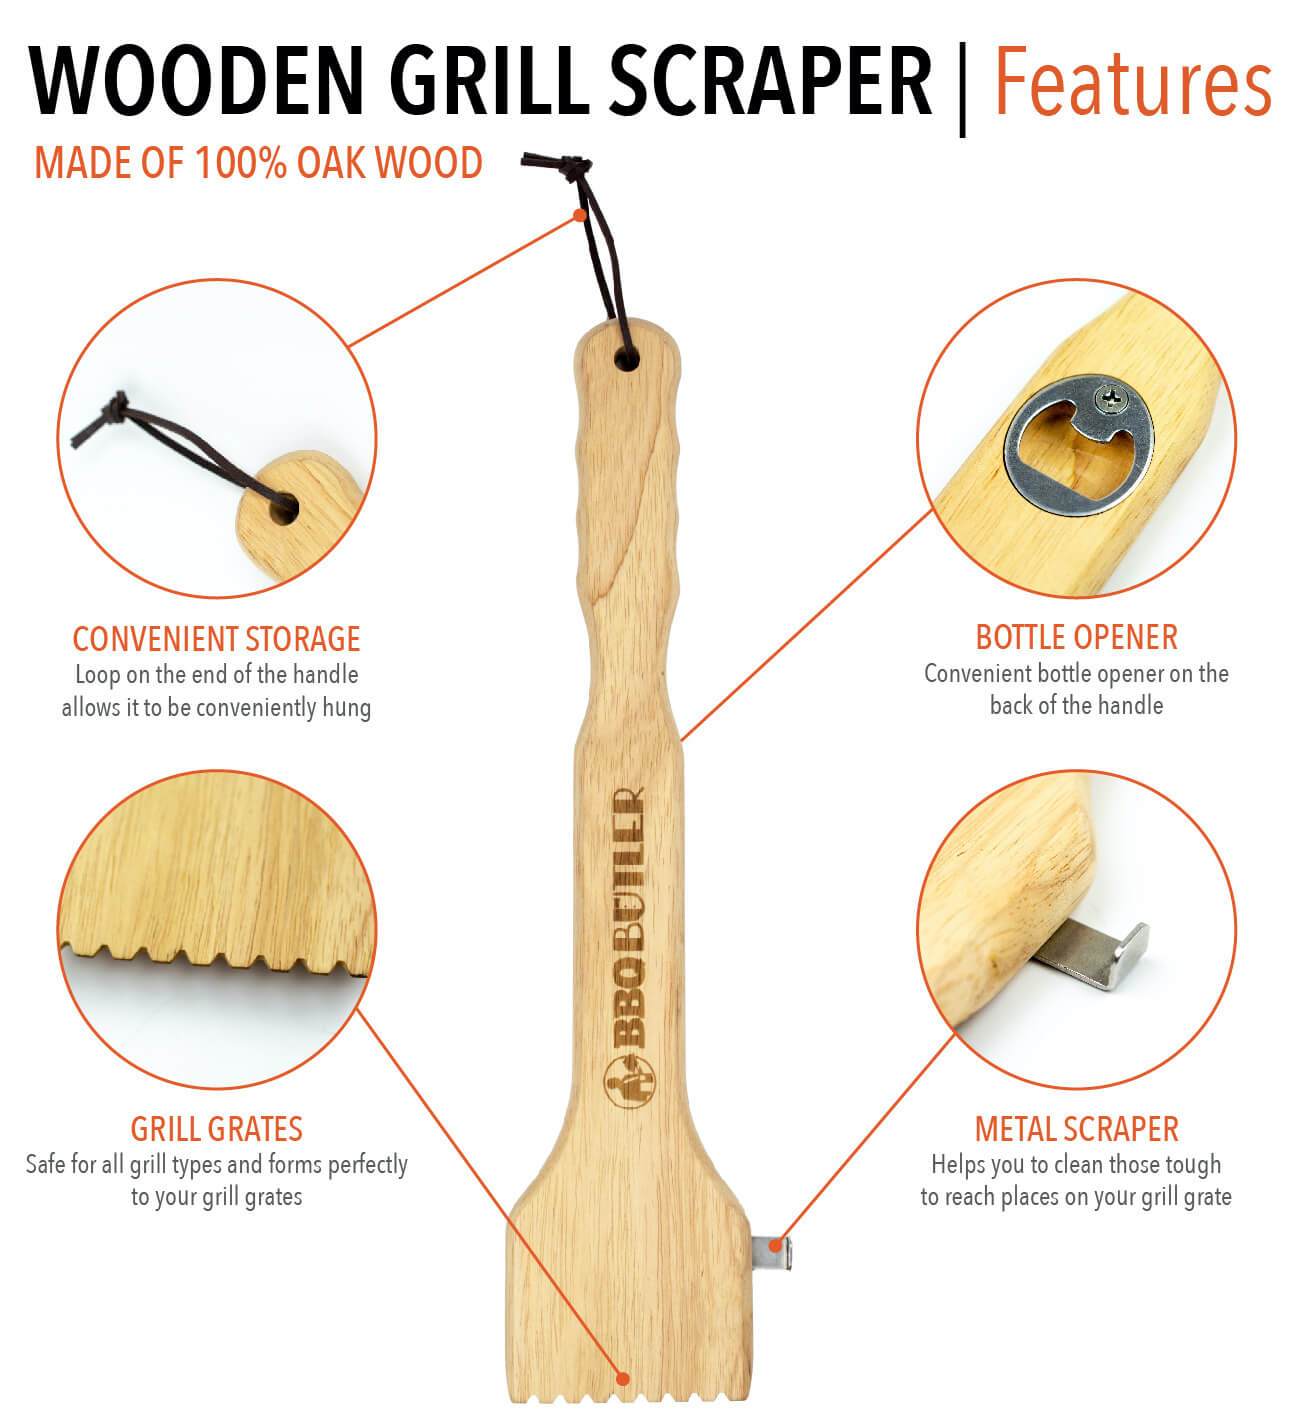 Wooden Grill Scraper - Shop